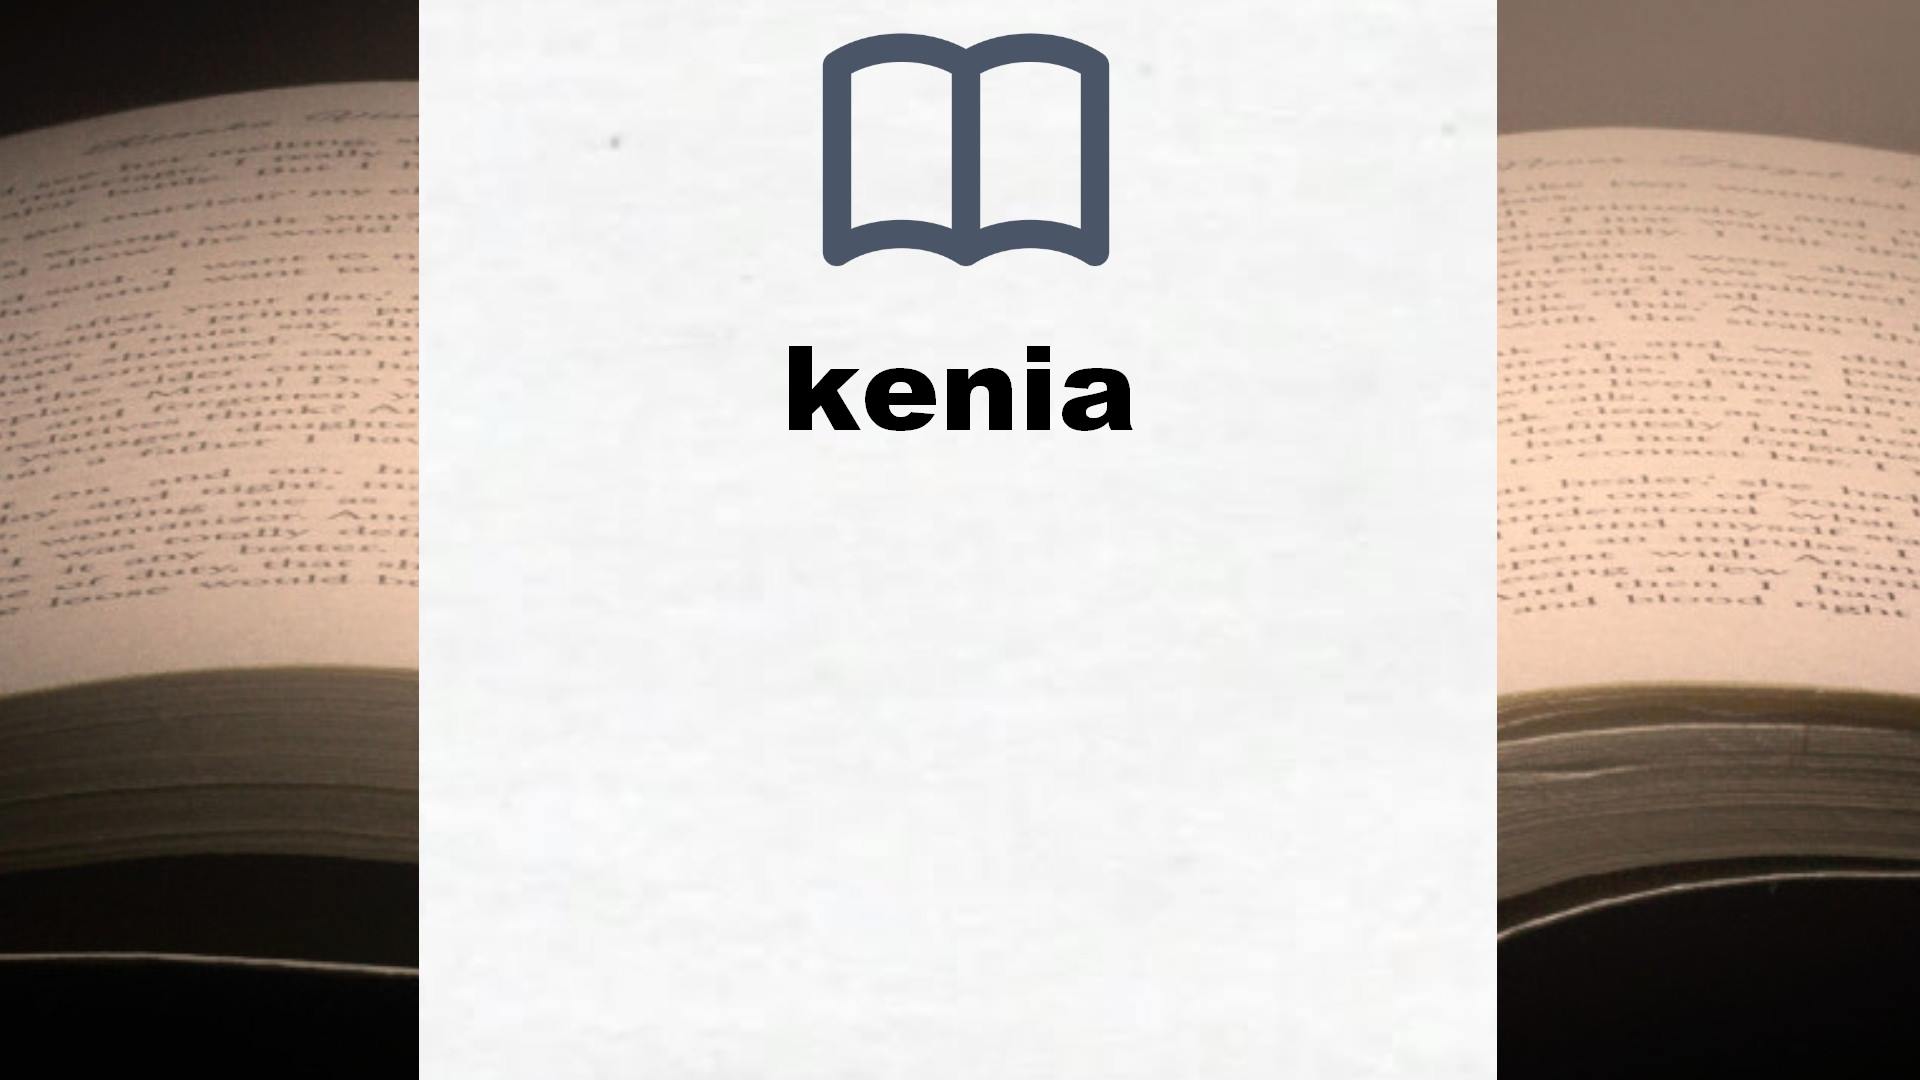 Libros sobre kenia